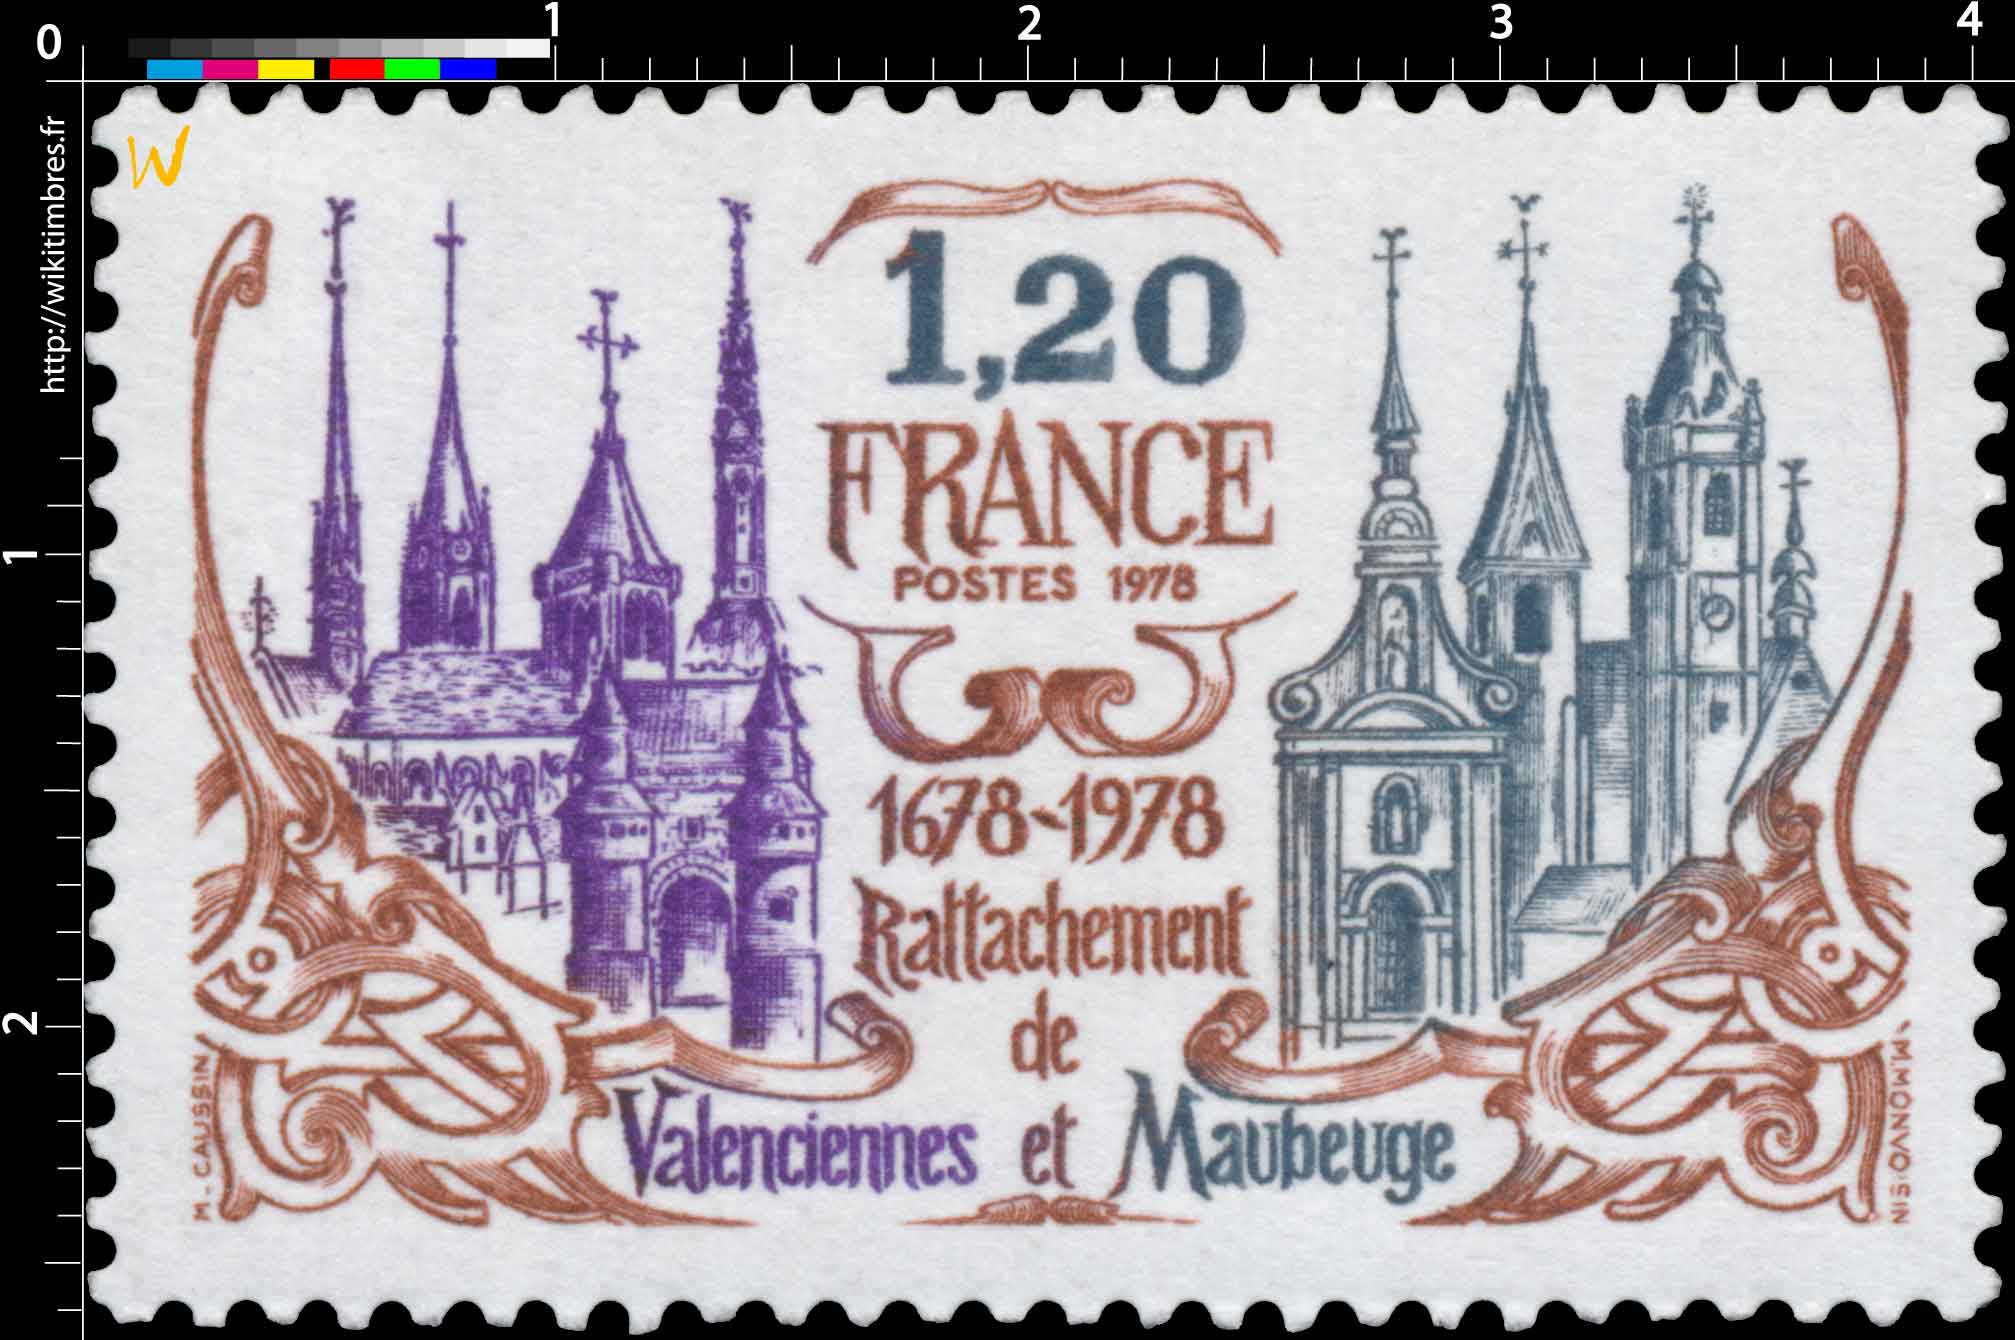 1978 Rattachement de Valenciennes et Maubeuge 1678-1978